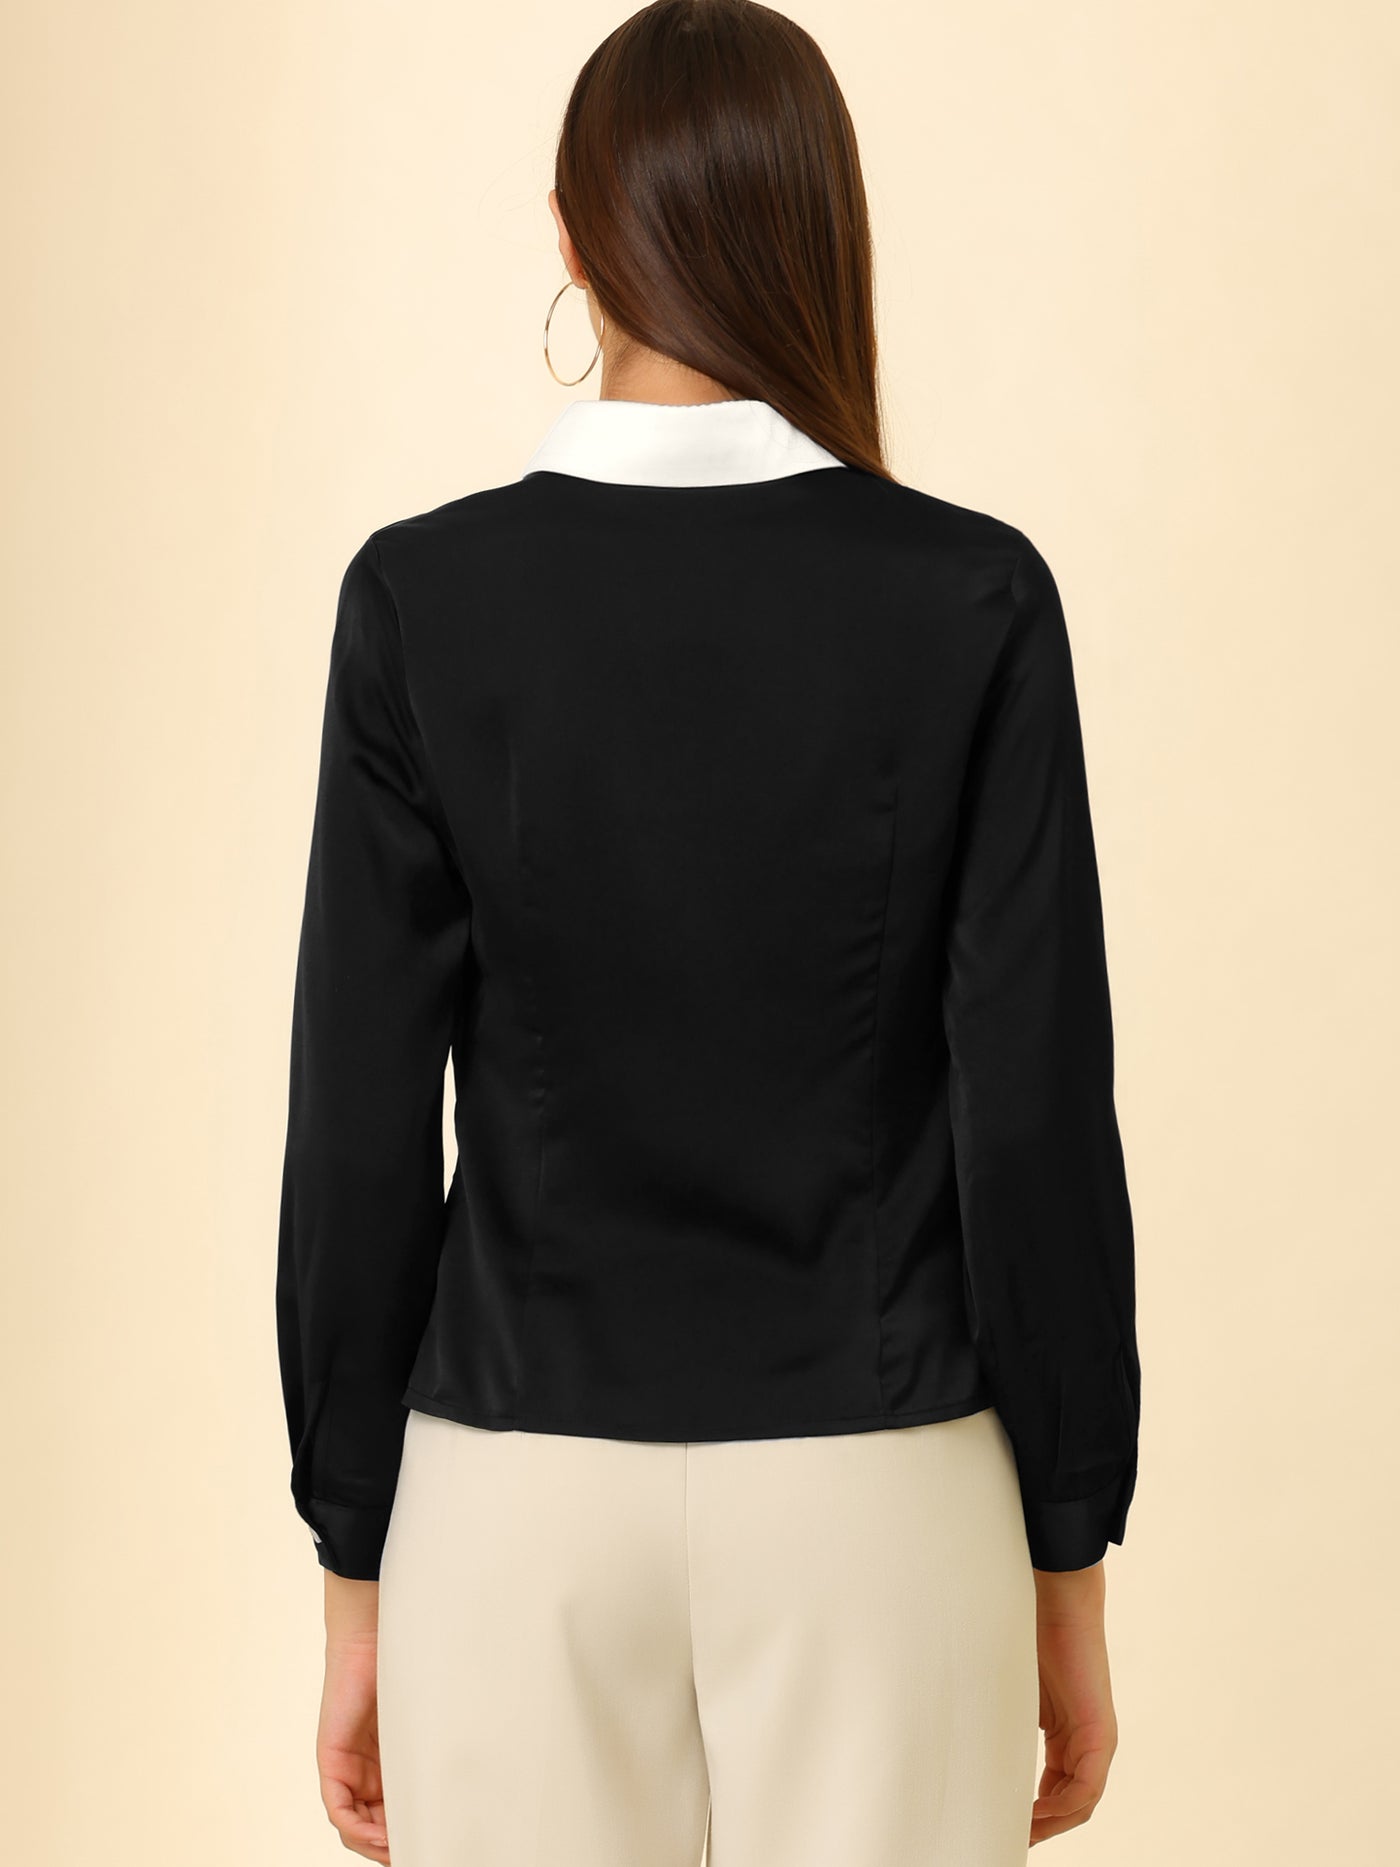 Allegra K Work Tops Long Sleeve Contrast Collar Satin Button Down Shirt